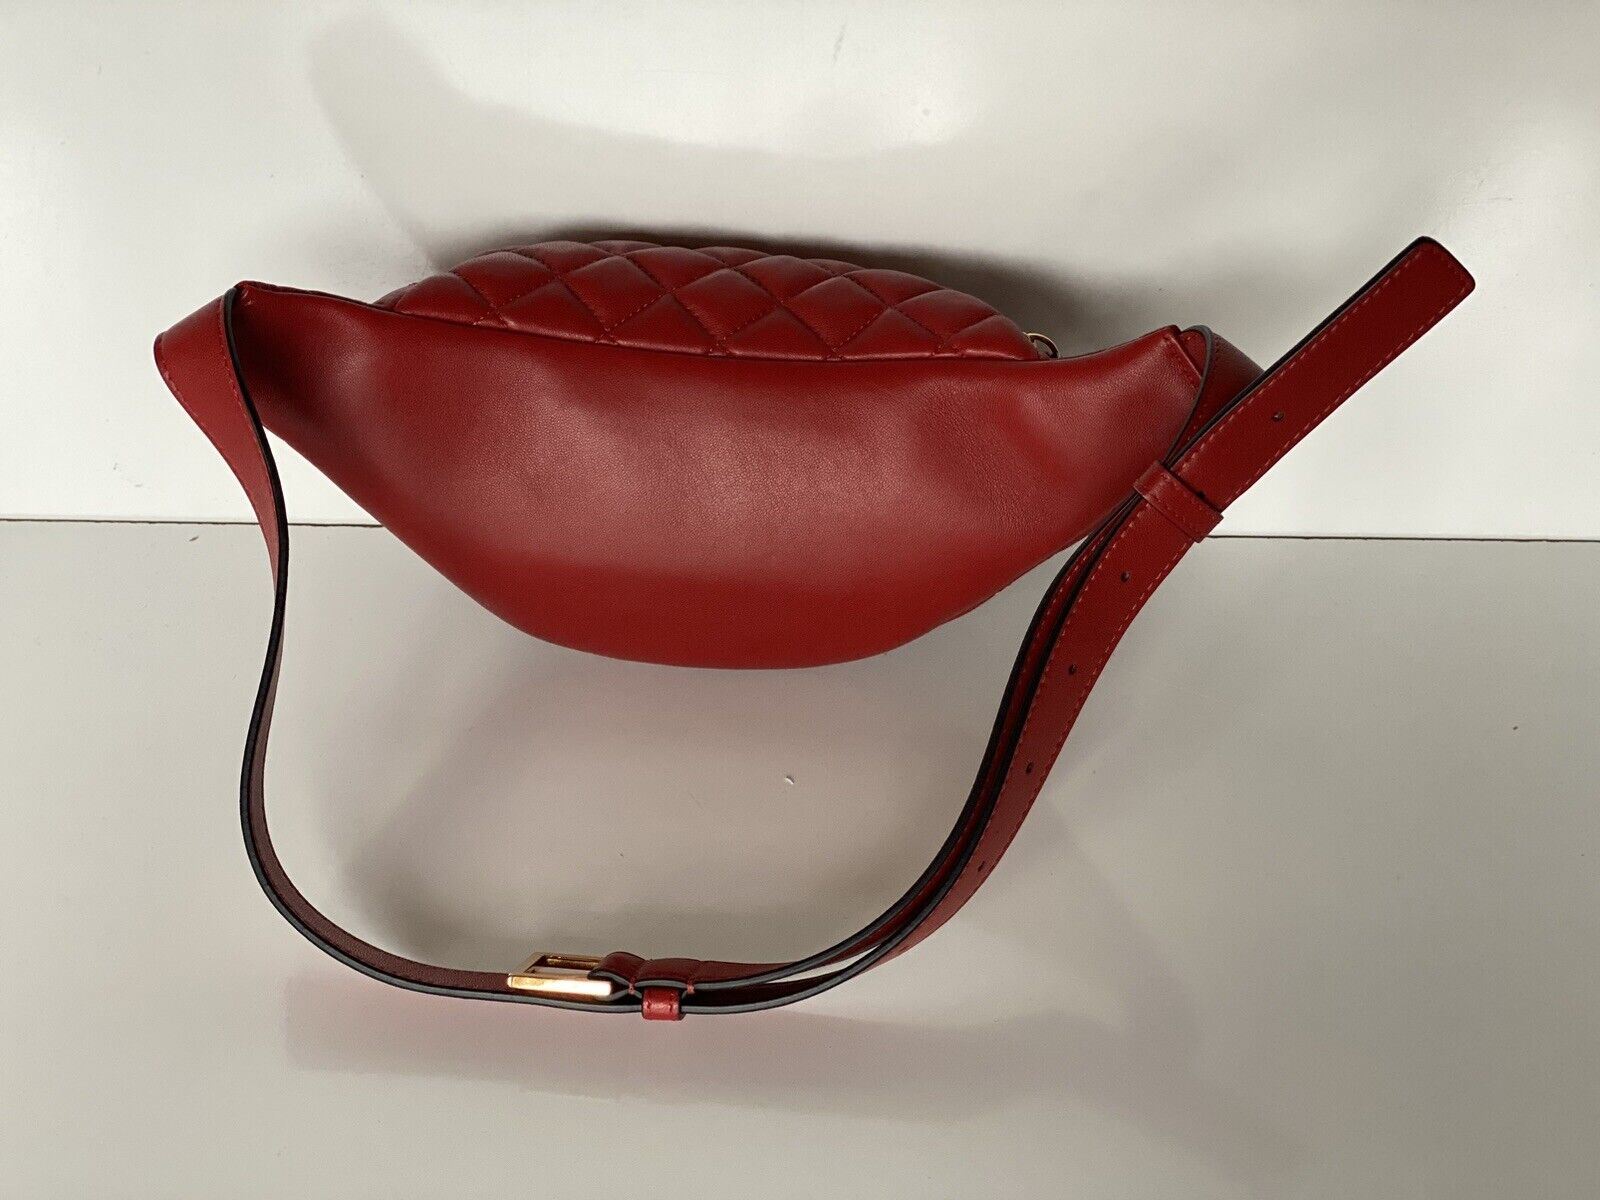 Neu mit Etikett: Versace Damen-Gürtel-/Taillen-/Körpertasche aus gestepptem Lammleder in Rot, 1A02151, Italien 